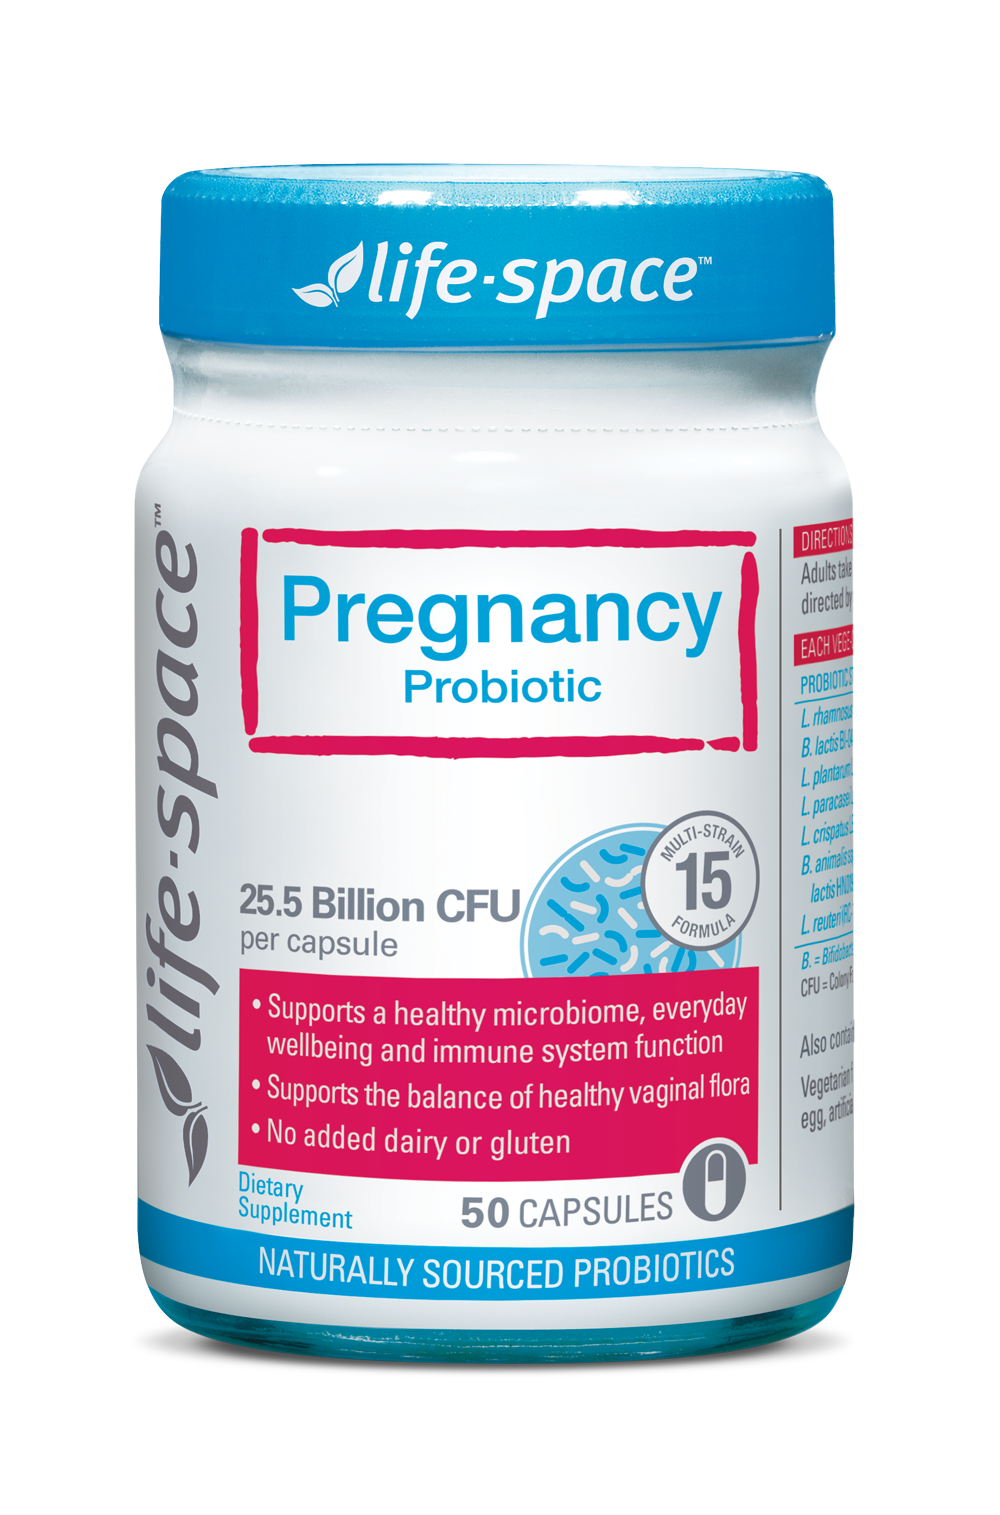 LifeSpace Pregnancy Probiotic 50 Capsules